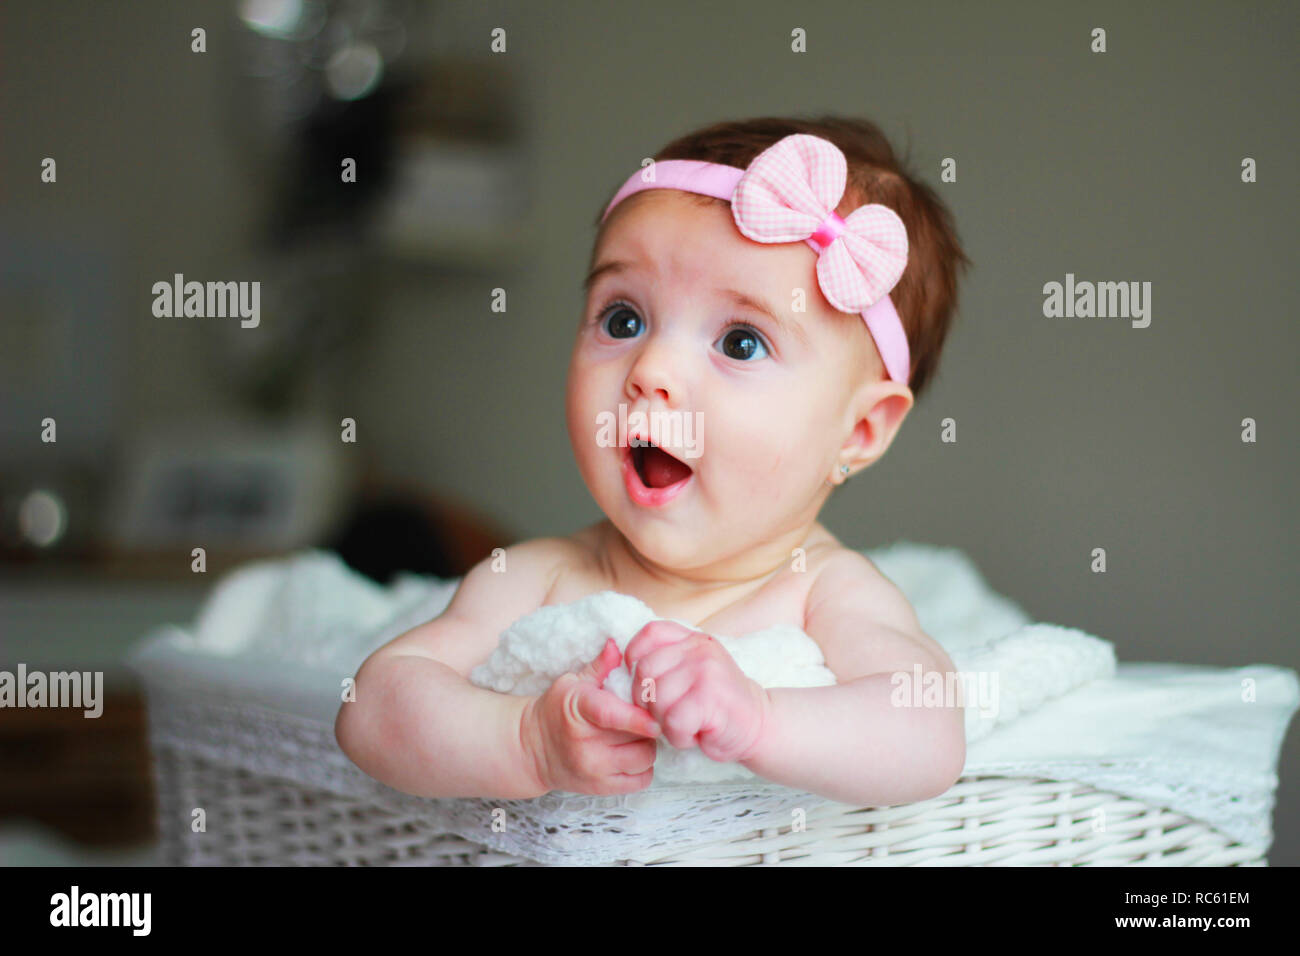 Cute Baby Girl, mit einem Bogen auf ihrem Haar, mit Erstaunen Gesicht Stockfoto